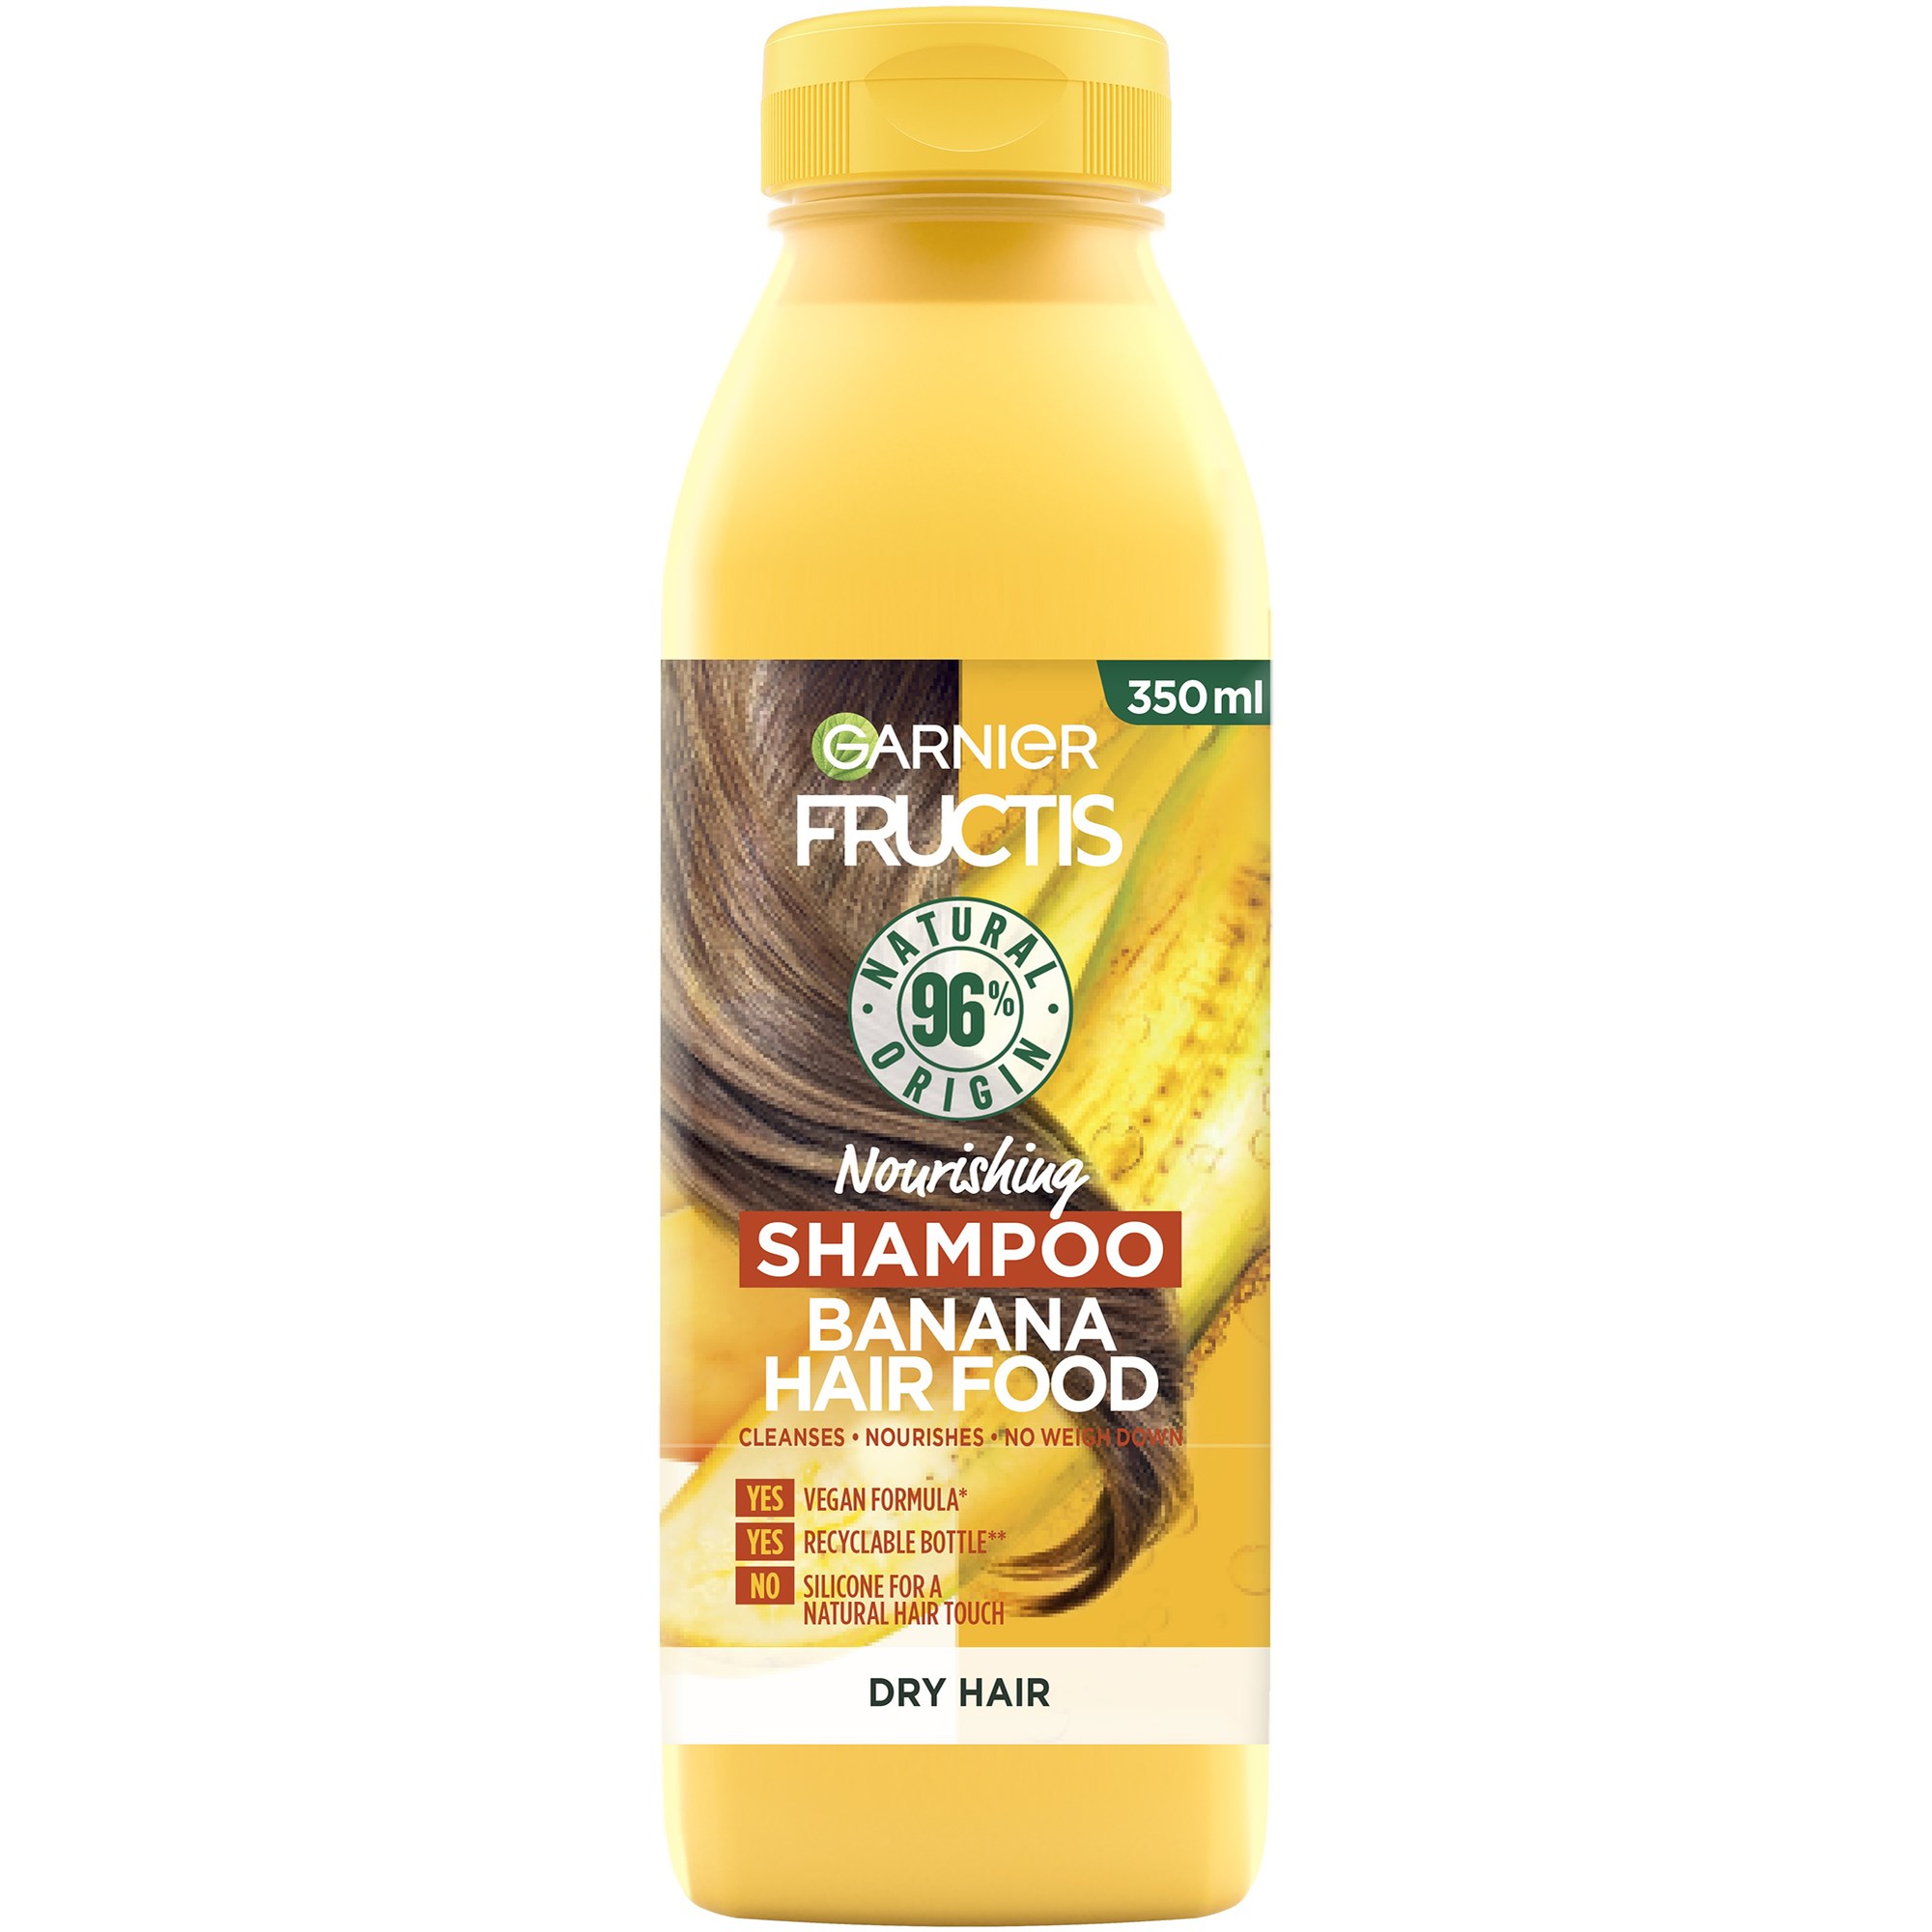 Läs mer om Garnier Fructis Nourishing Shampoo Banana Hair Food